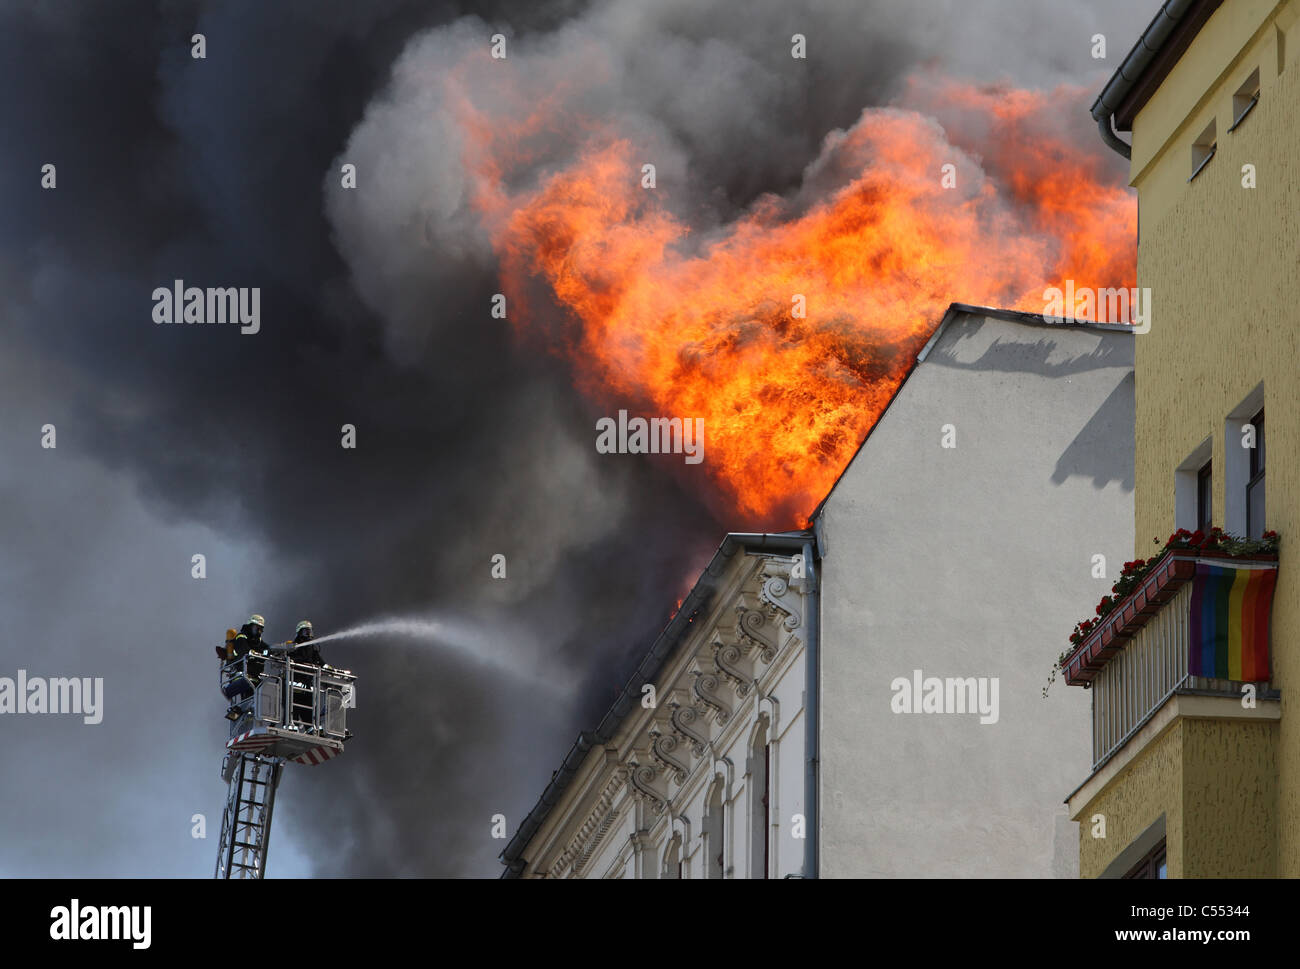 Brennendes Haus Stockfotos Und Bilder Kaufen Alamy